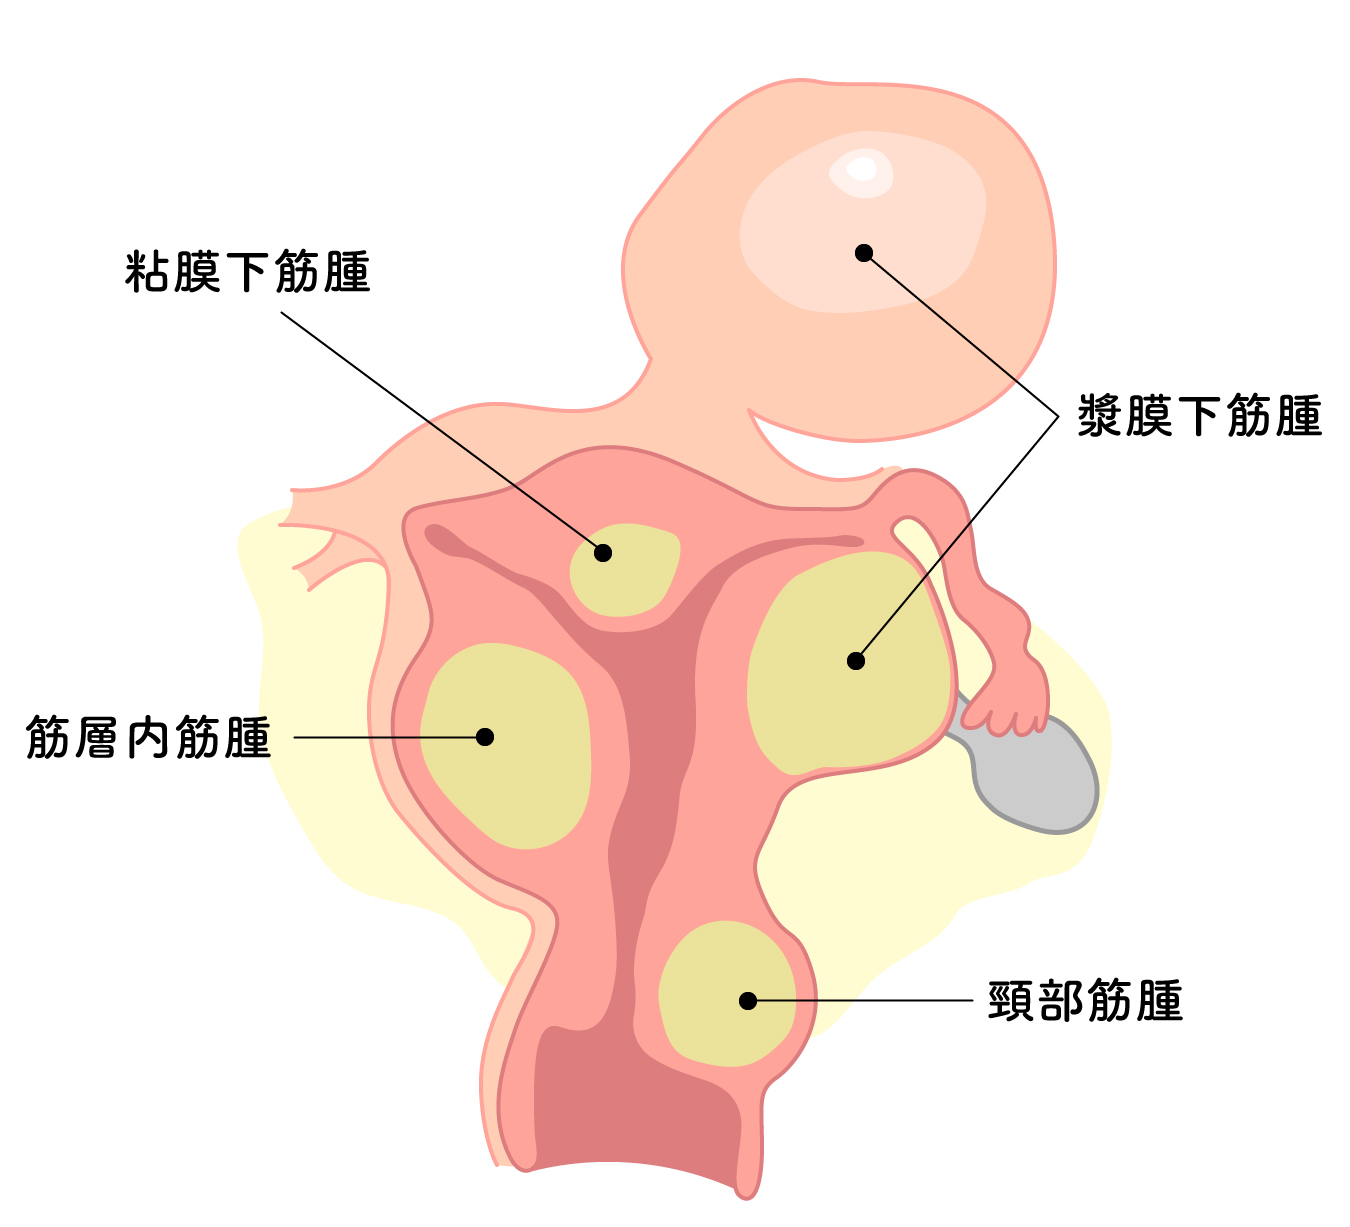 子宮筋腫の種類